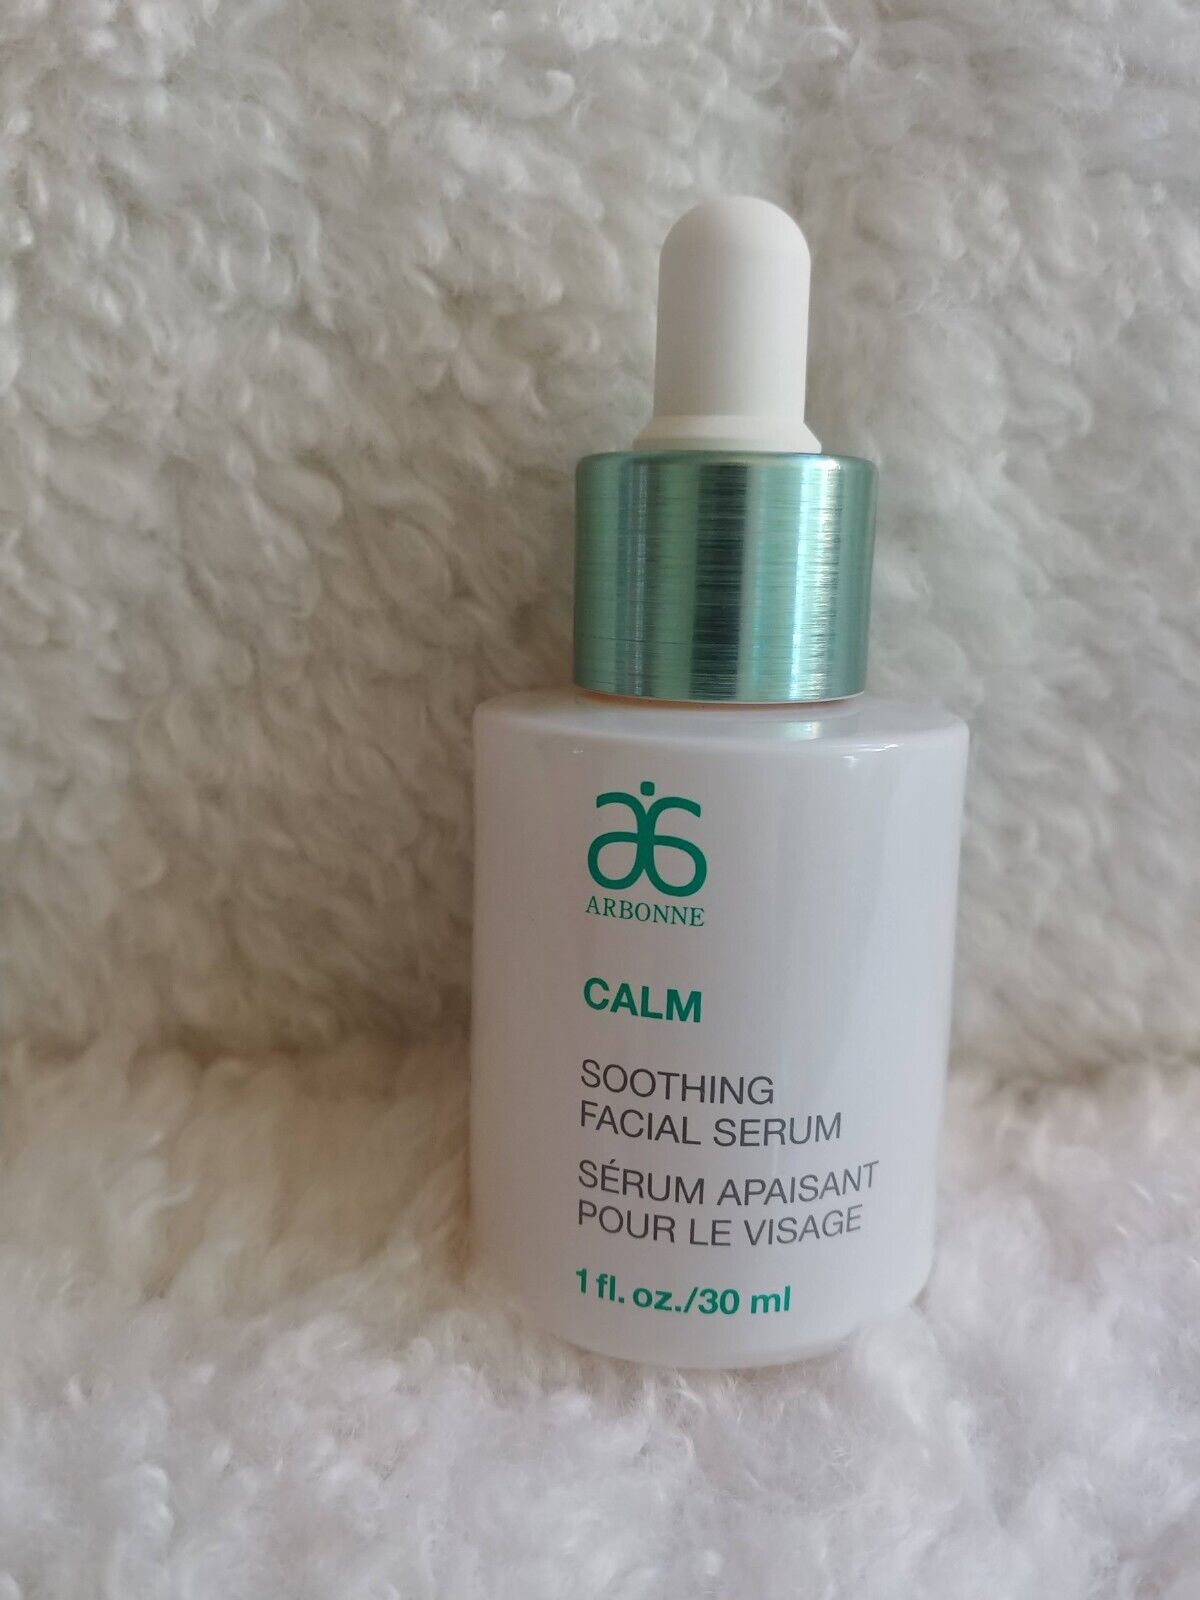 ARBONNE CALM Soothing Facial Serum  1 fl. oz.   30 ml , New - Fresh